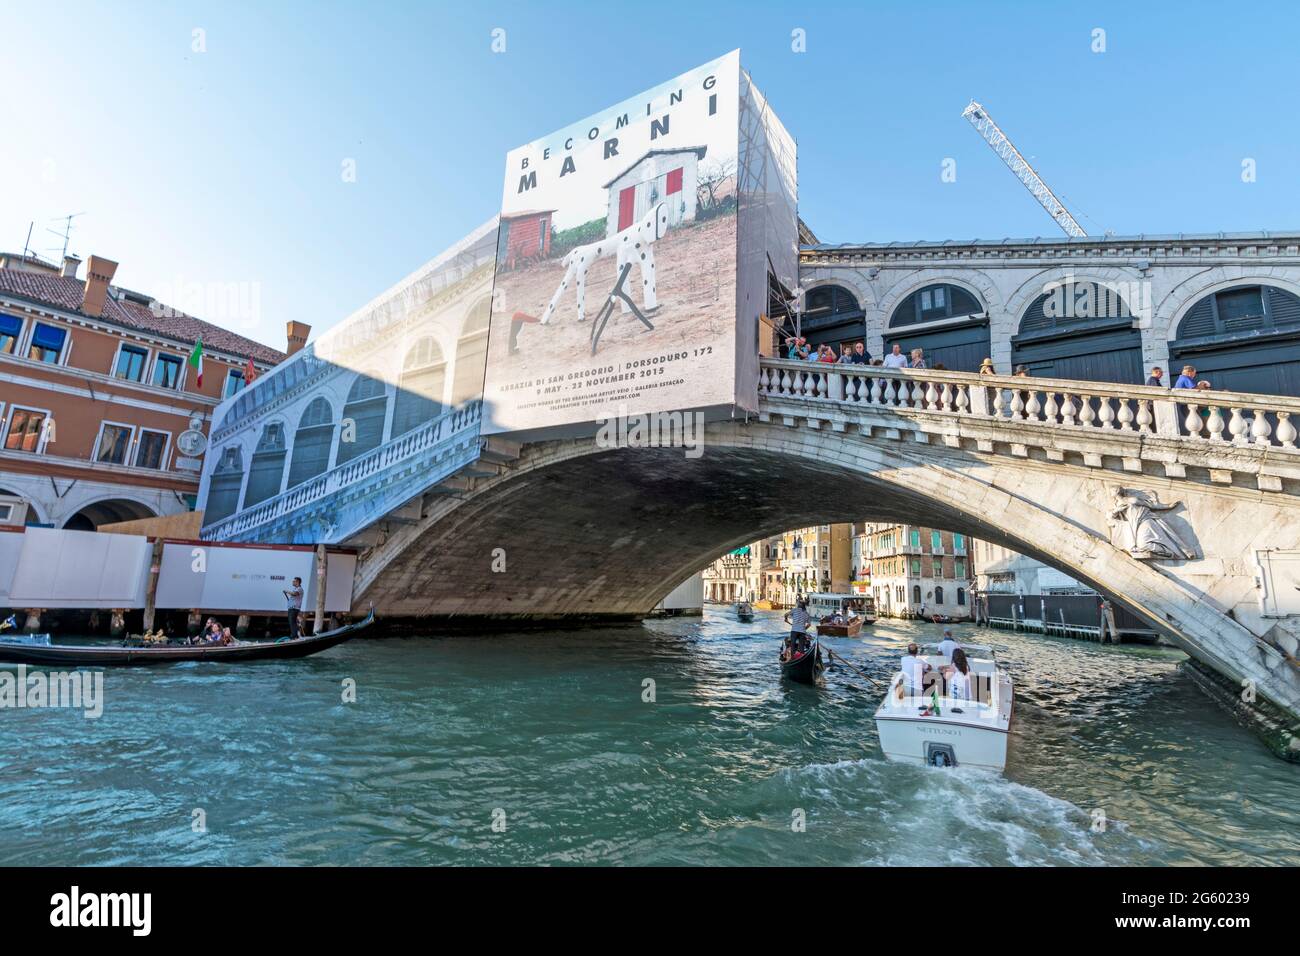 Die jahrhundertealte Ponte Di Rialto (Rialtobrücke), die während der Restaurierungsarbeiten mit großen Plastikplanen und bemalten Bögen bedeckt war Stockfoto